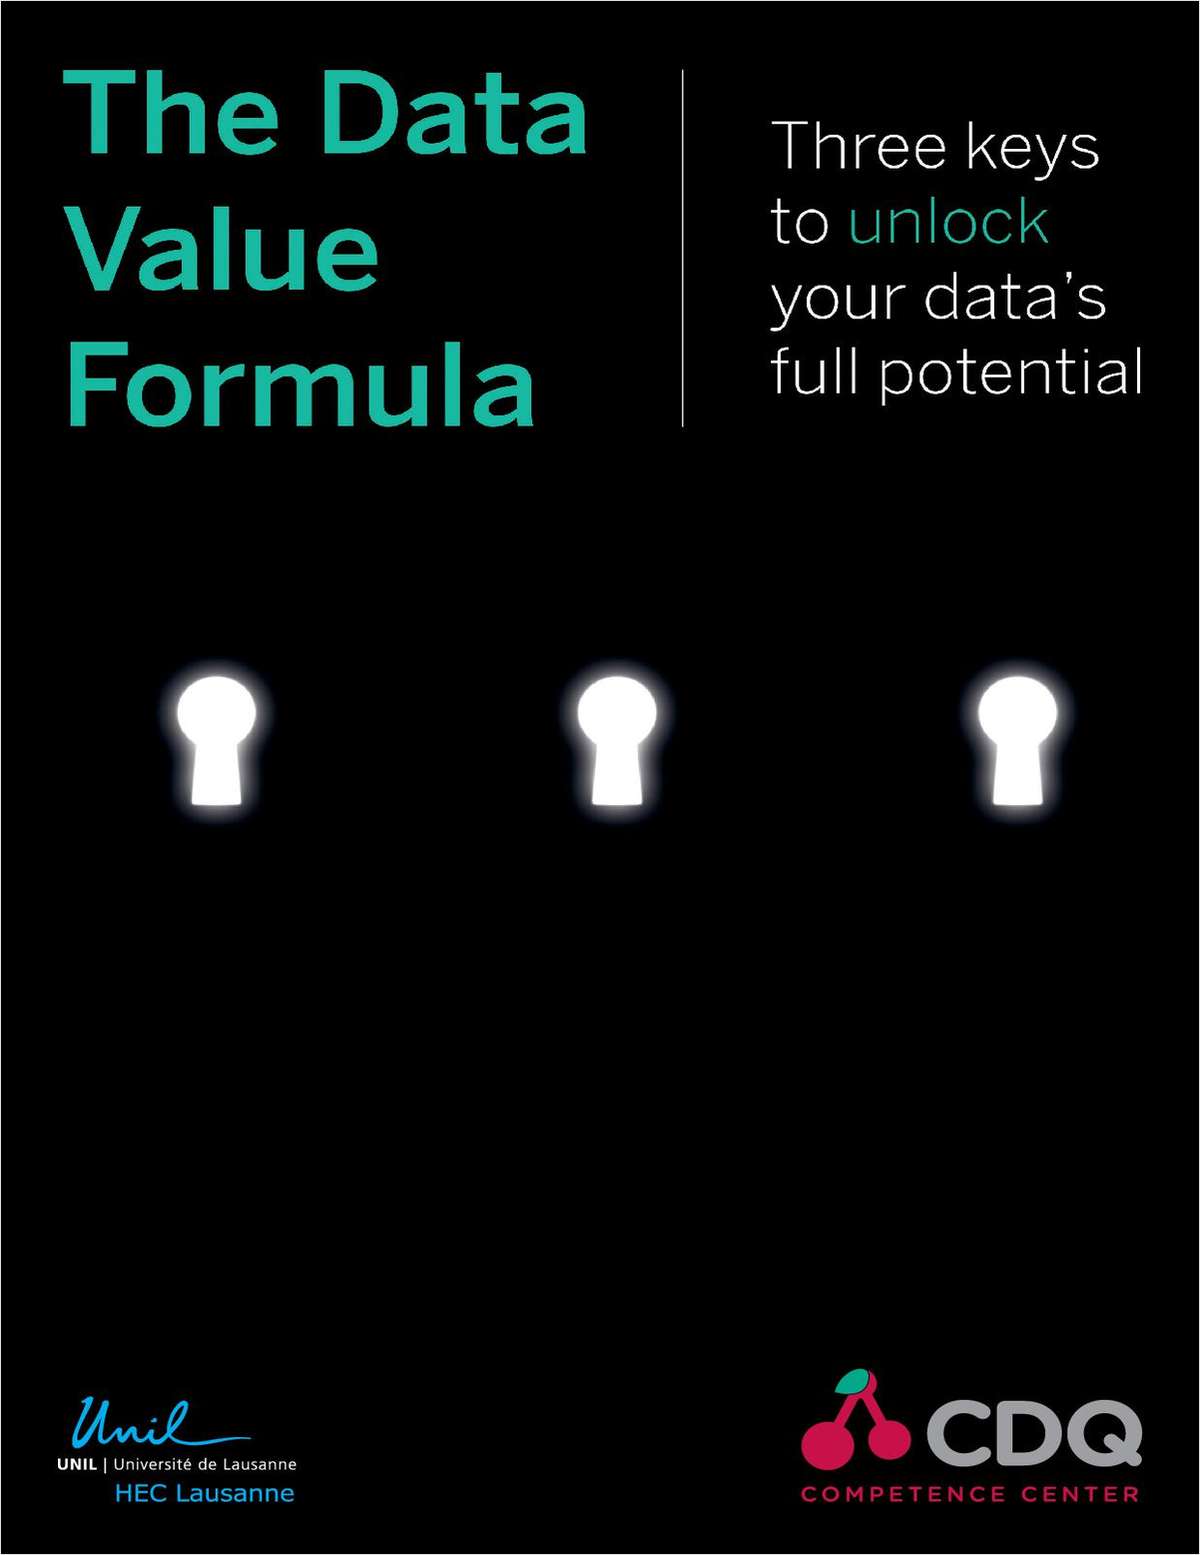 The Data Value Formula